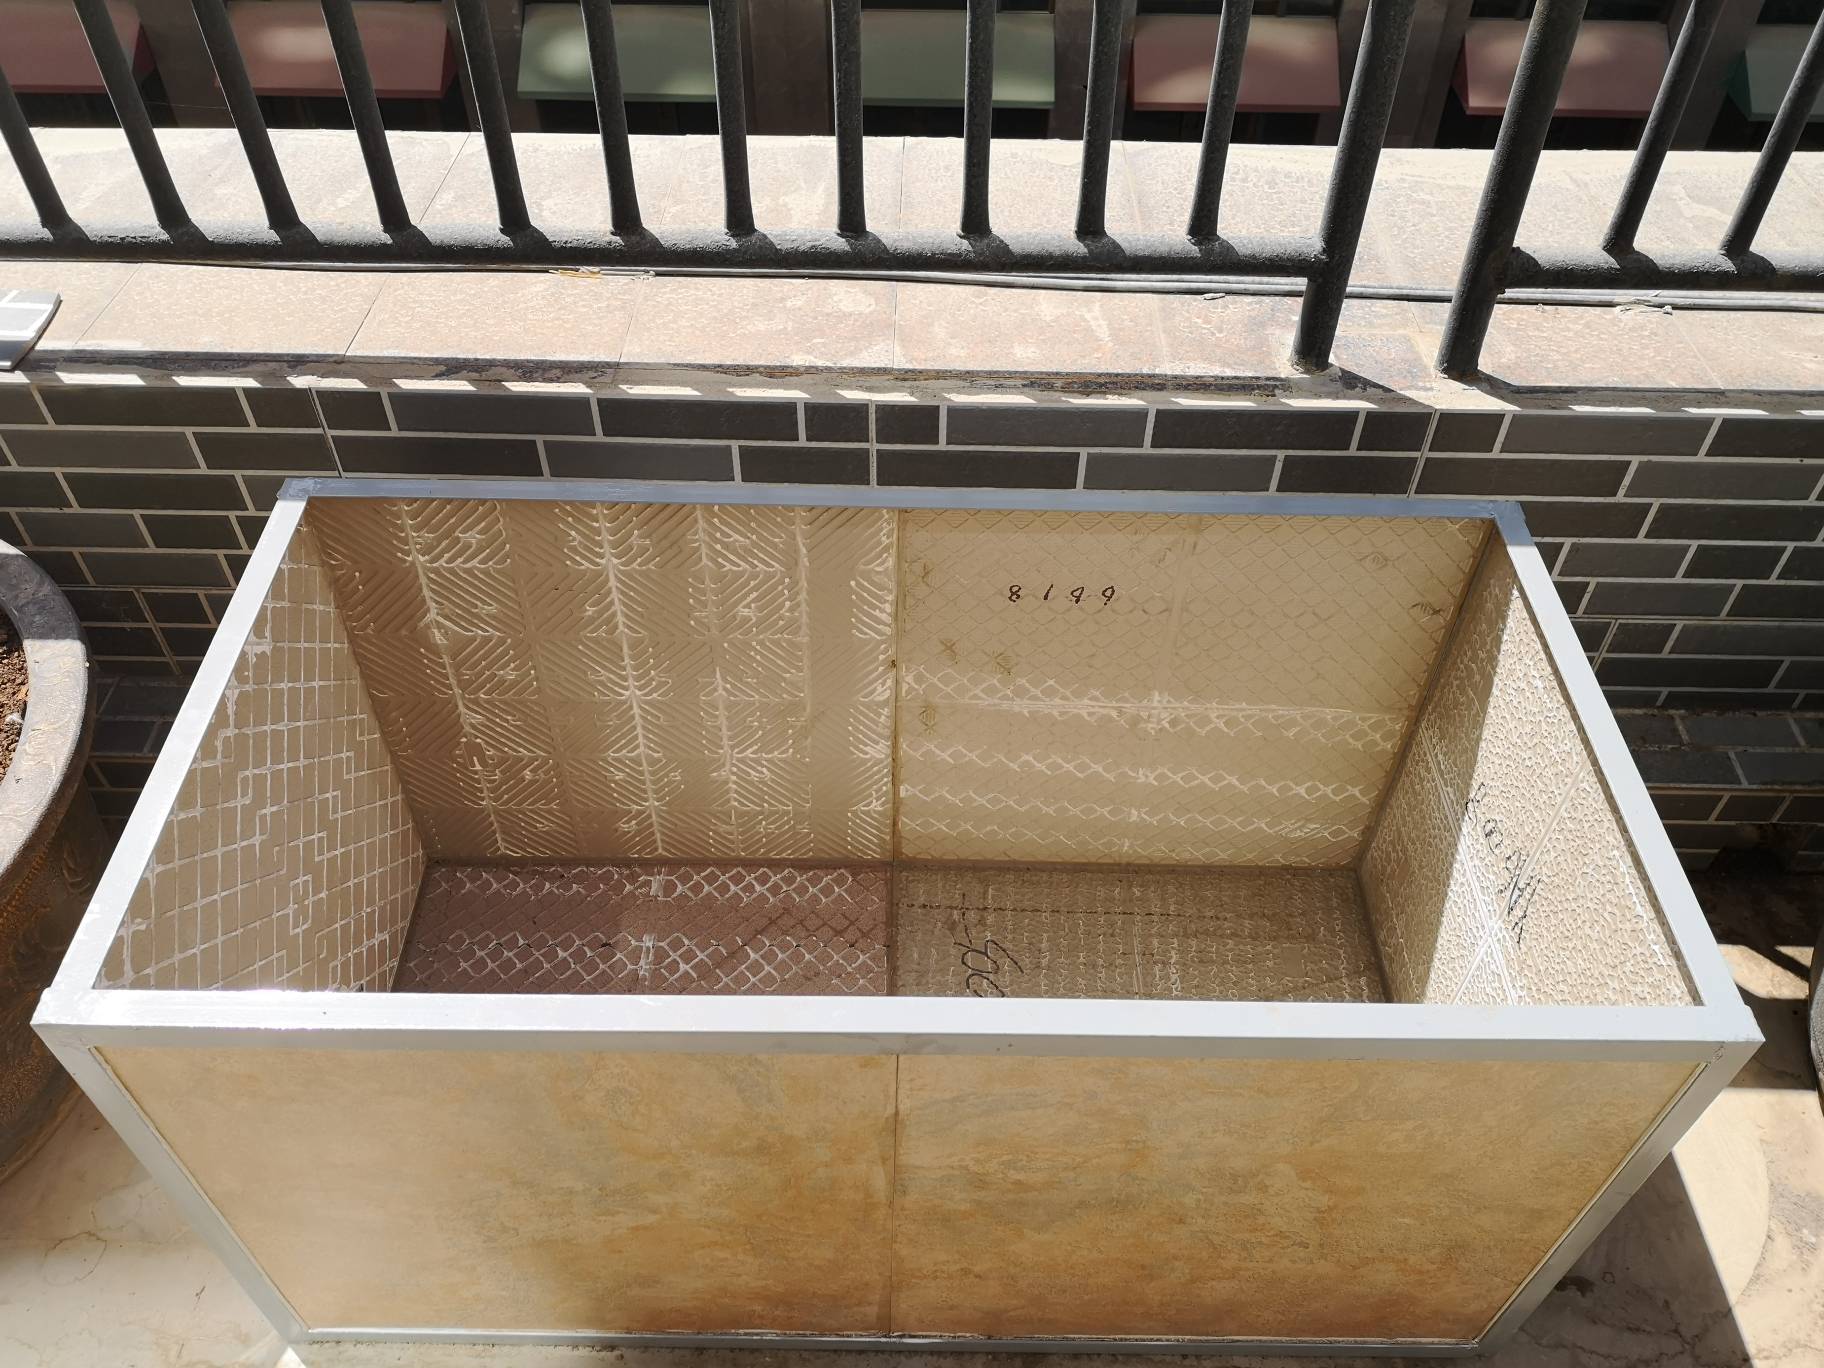 【果乔花园】露台升级改造更新中……瓷砖种植箱制作完成!